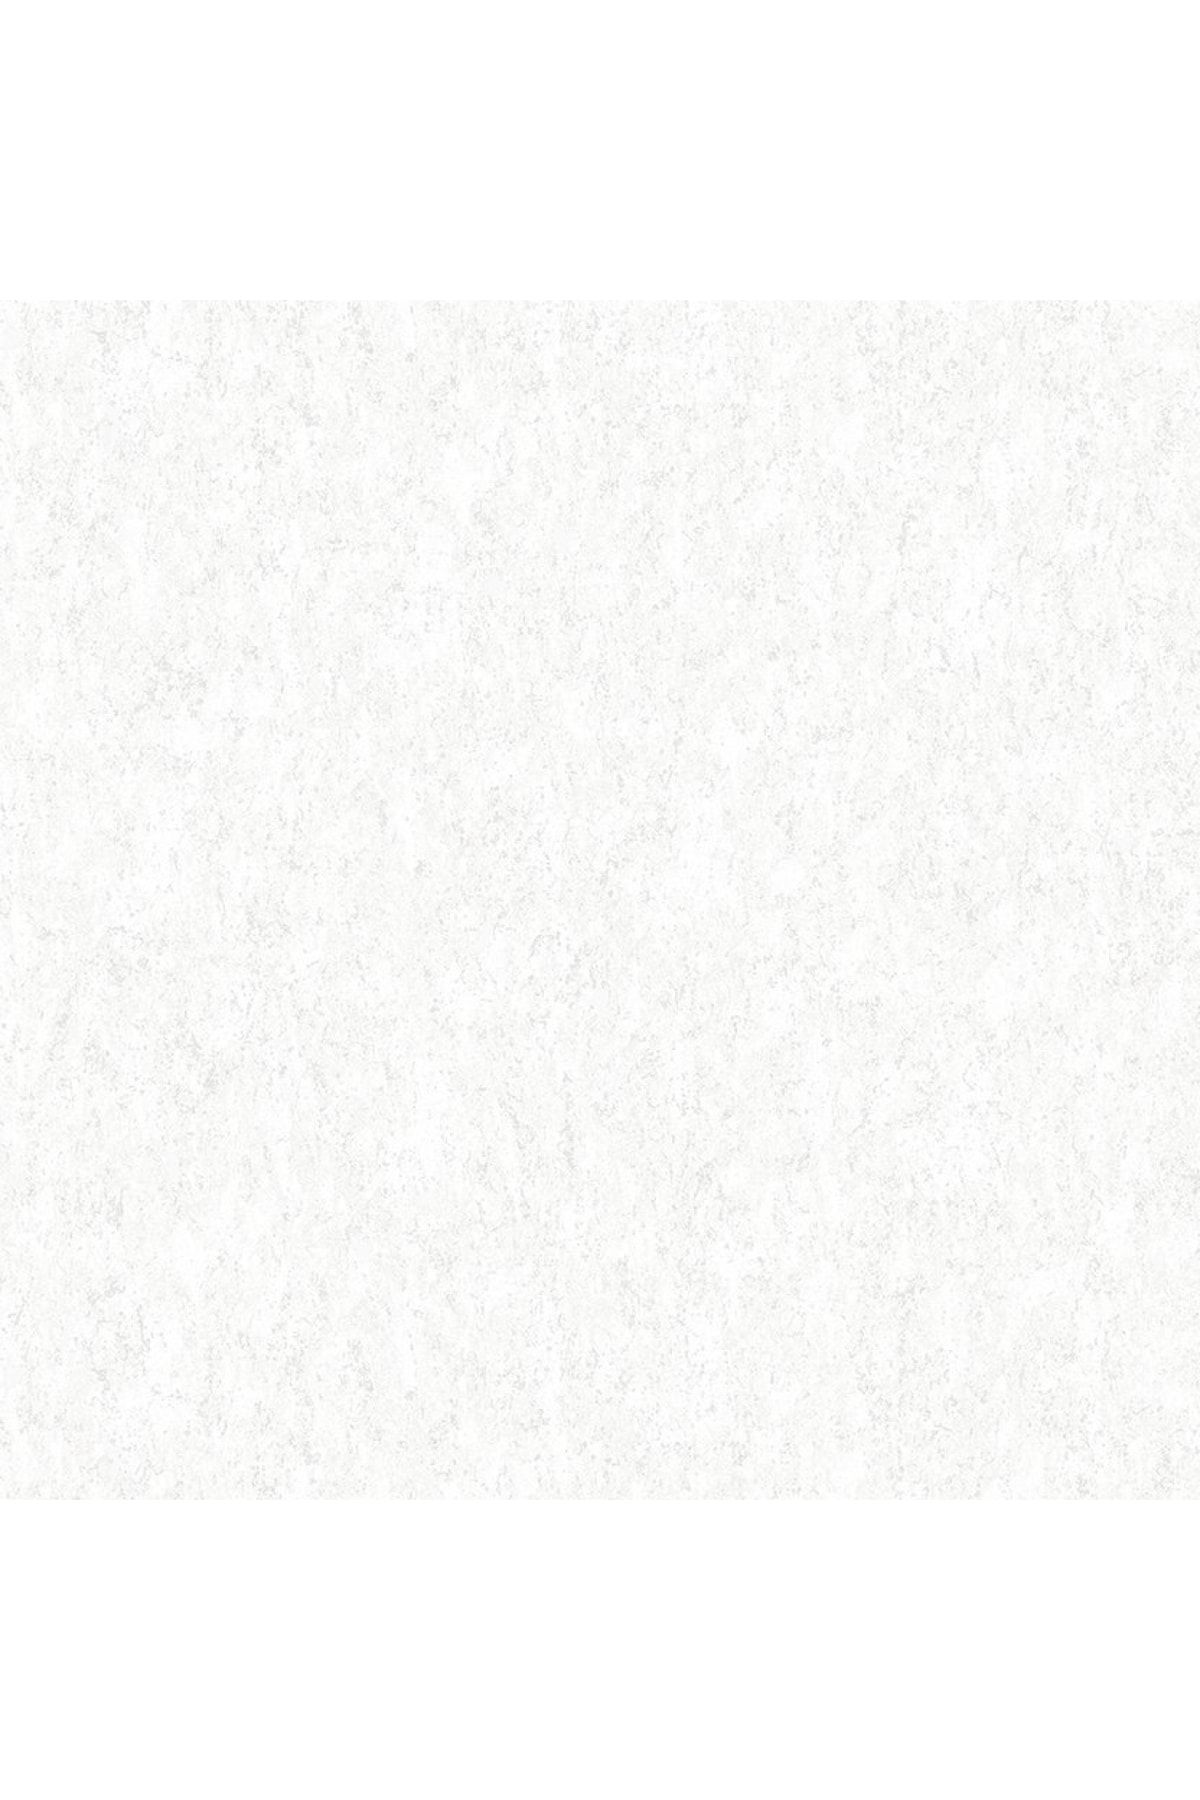 Decowall Decoparati Mermer Desenli Beyaz Royal Port Duvar Kağıdı 8806-02